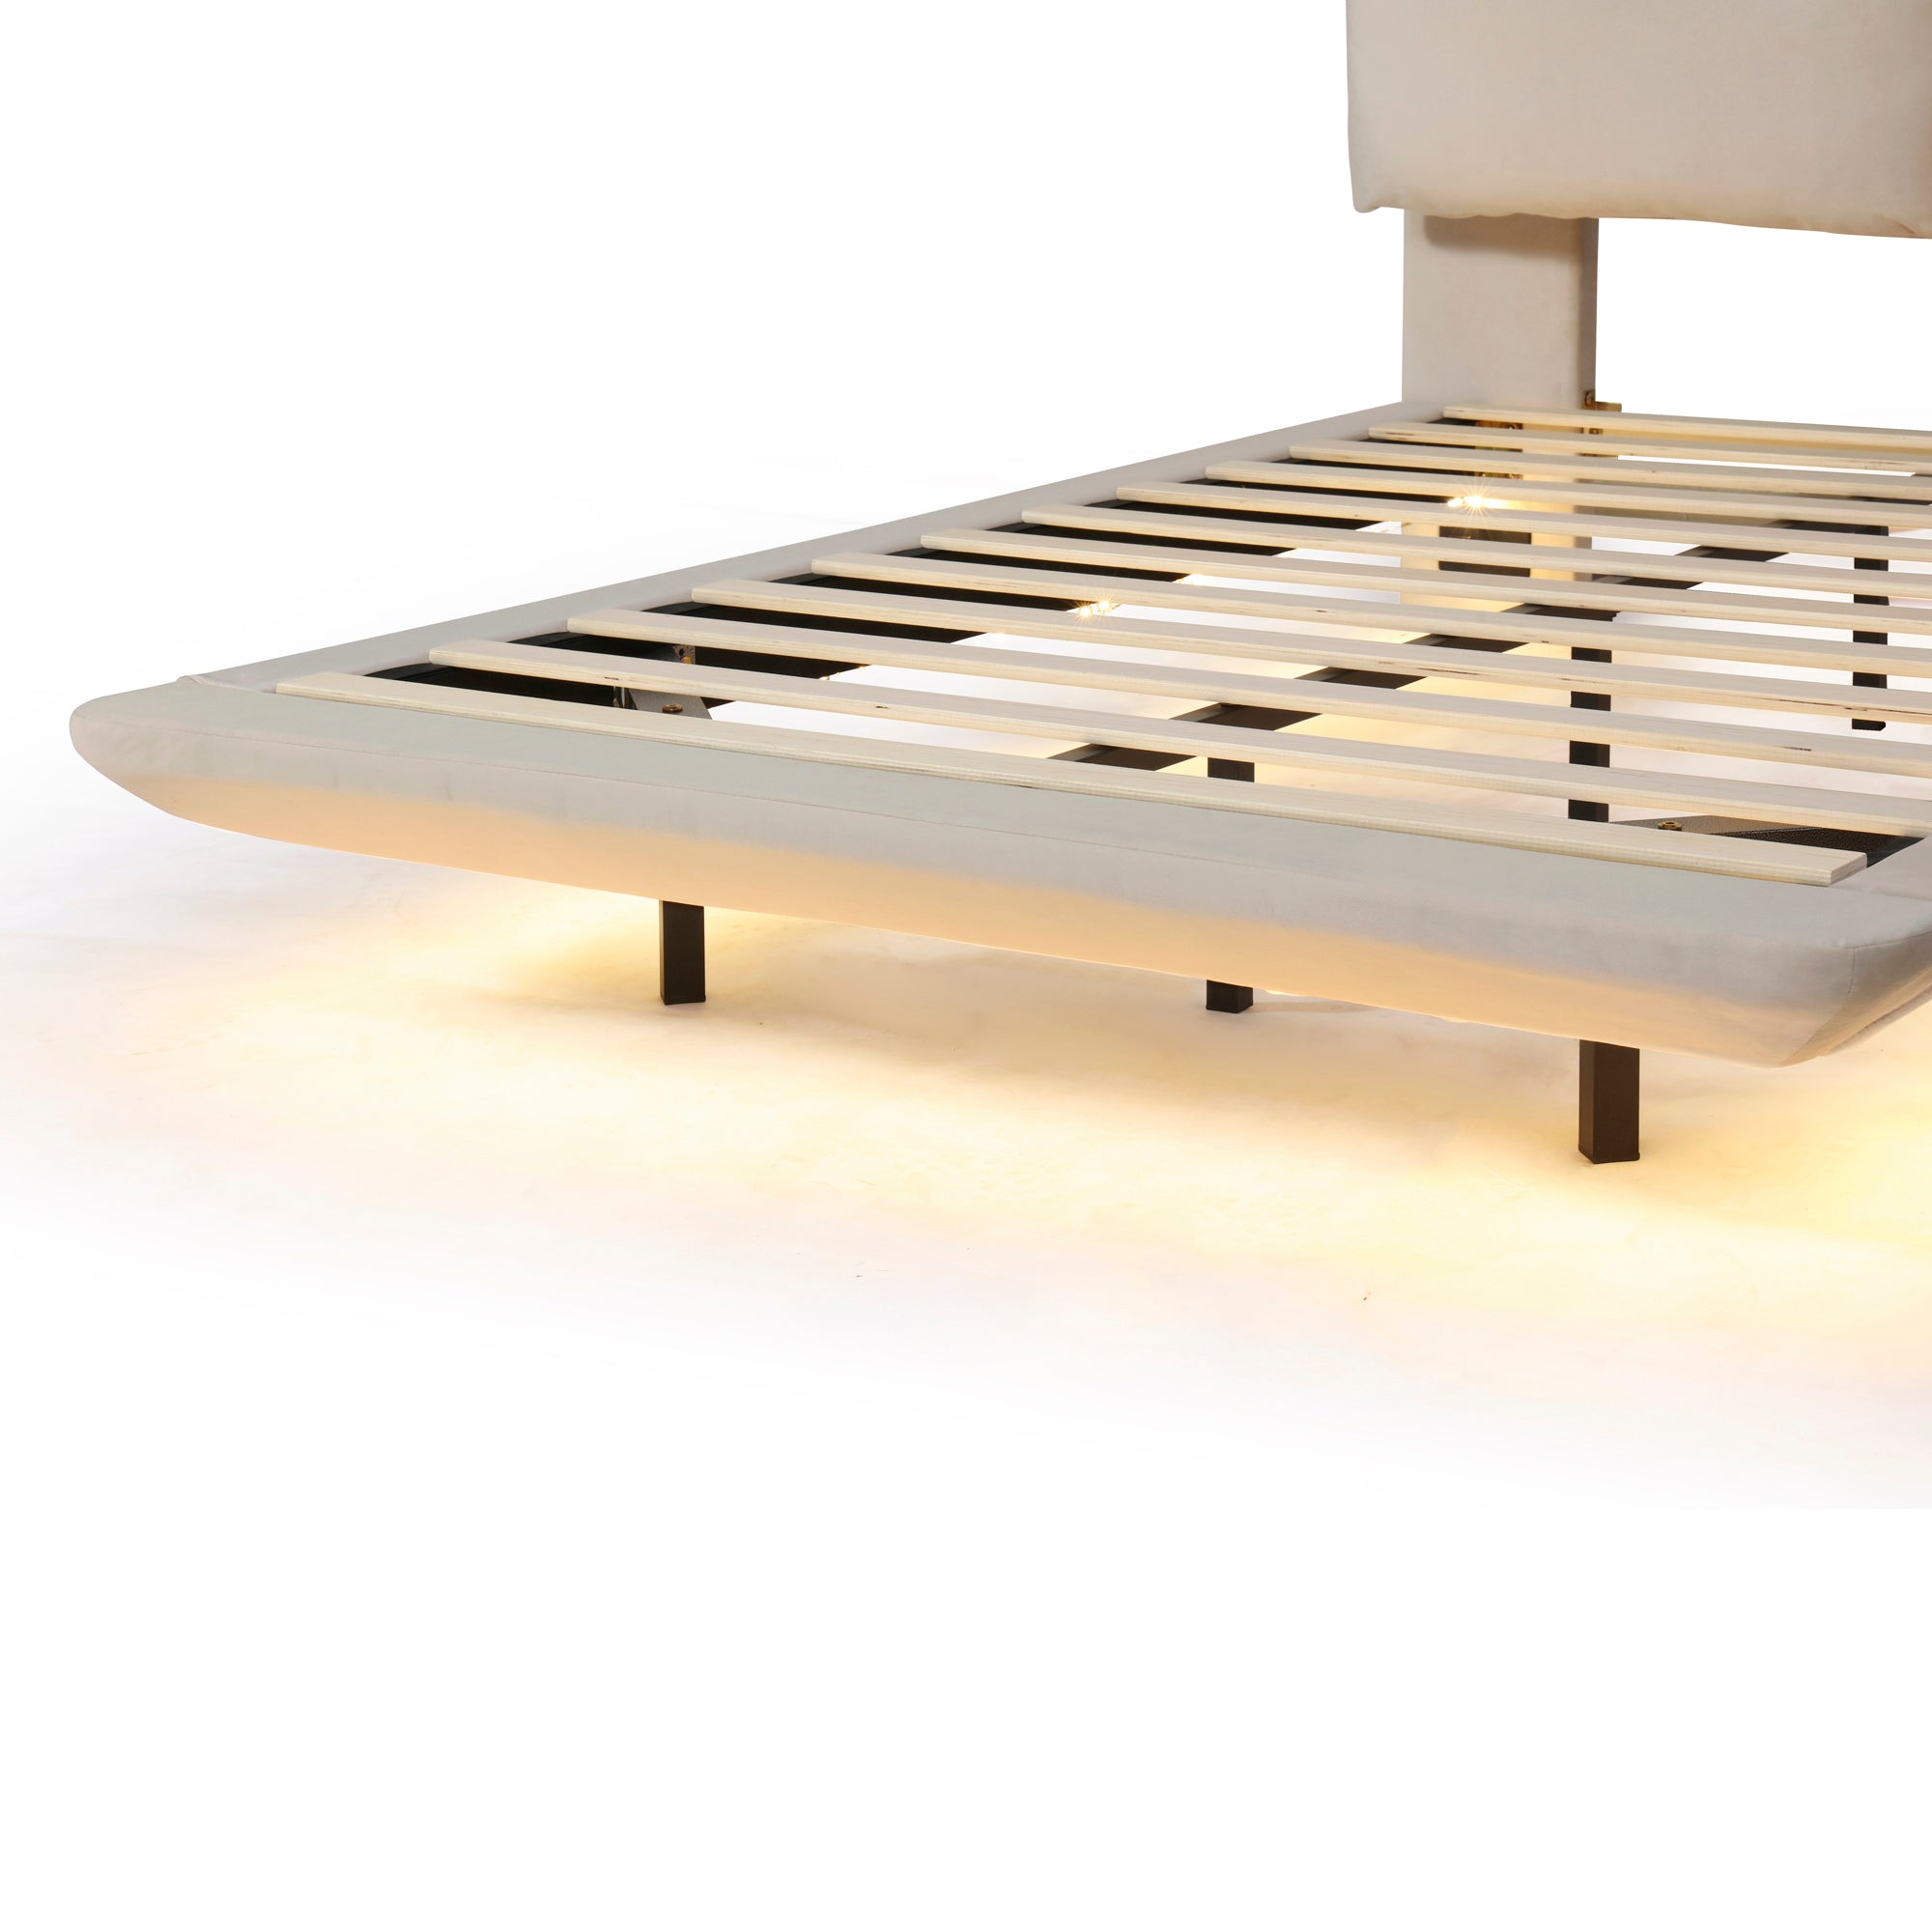 Bellemave® Upholstered Platform Bed with Sensor Light and 2 Large Backrests, 2 sets of USB Port and Socket on each rear Bed Leg Bellemave®